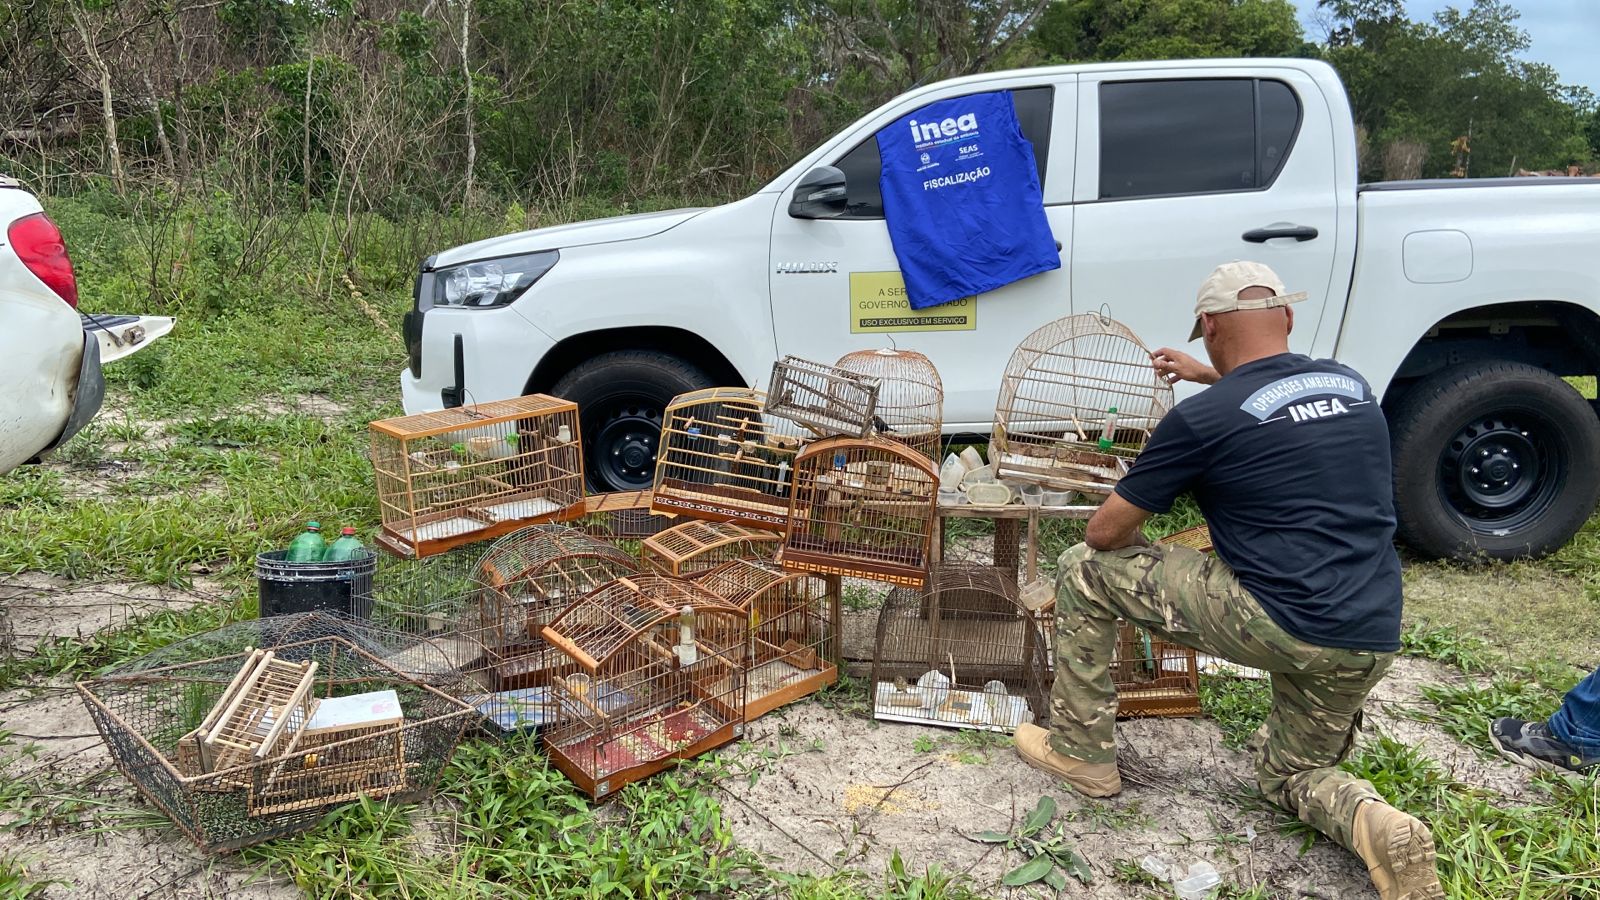 Inea resgata quase 30 aves silvestres mantidas em cativeiro